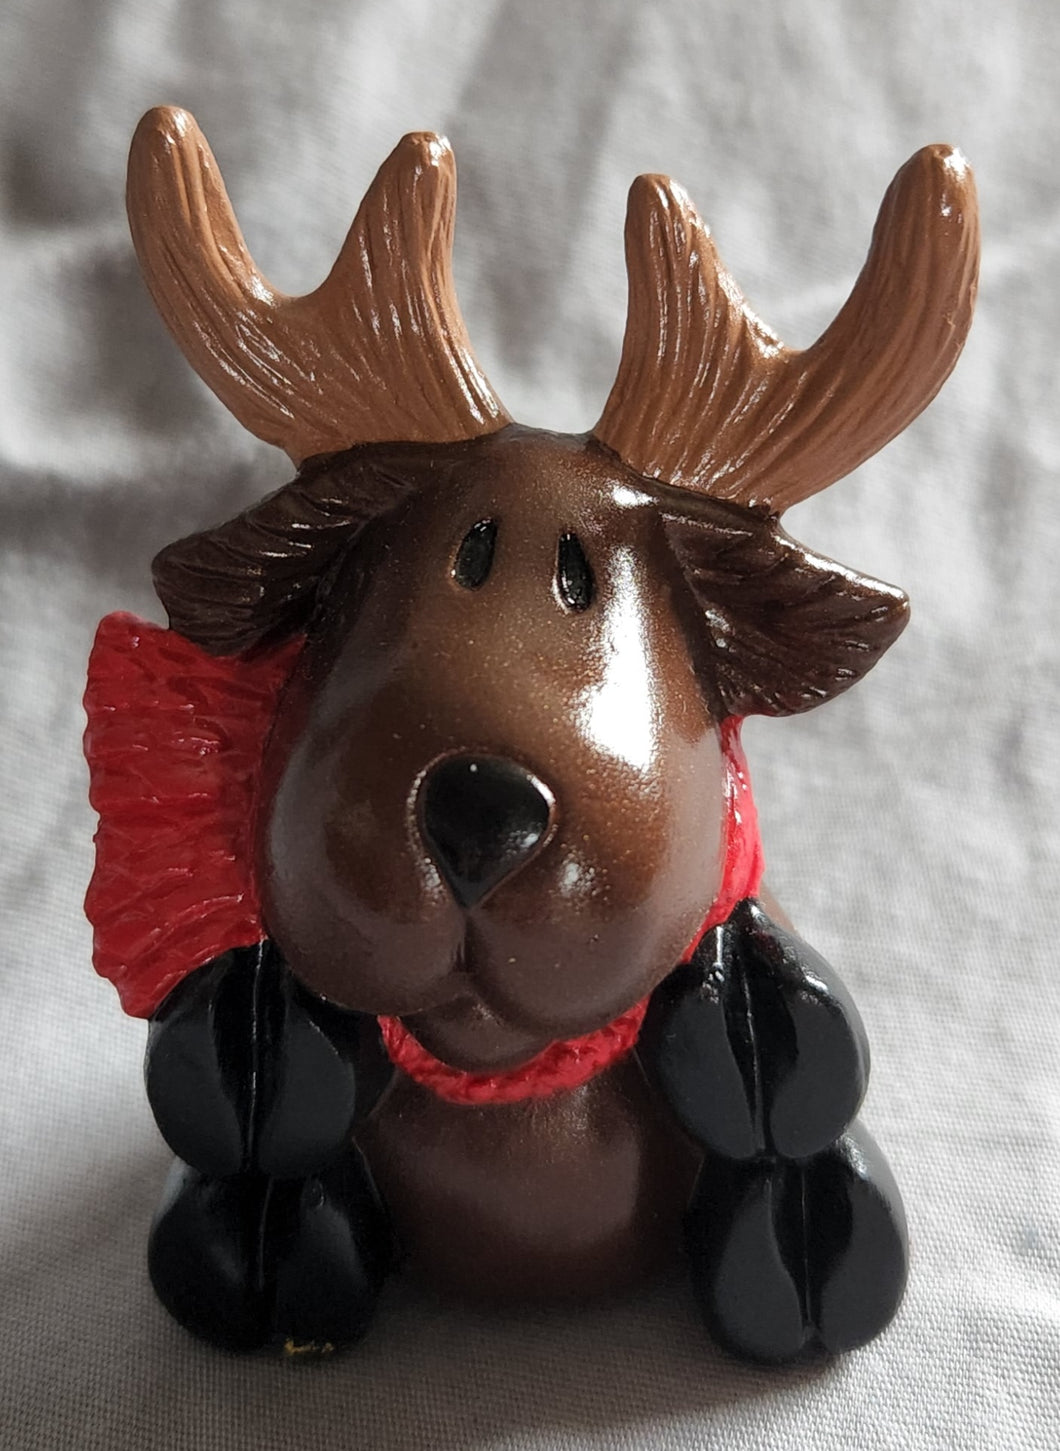 Ceramics - Reindeer, Sitting